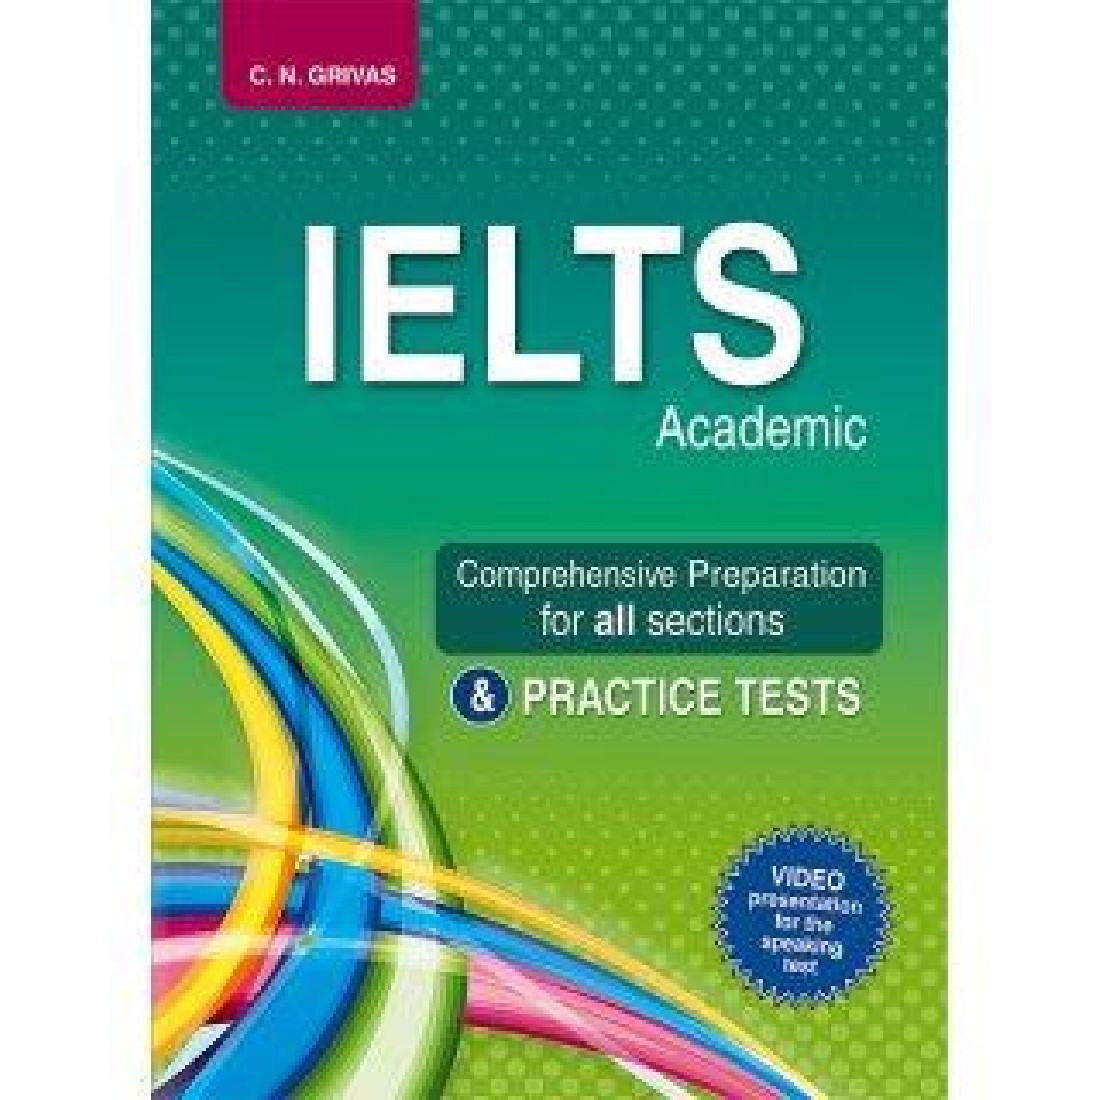 Ielts speaking practice. IELTS. IELTS (Академический). IELTS preparation. IELTS Academic Practice Tests.